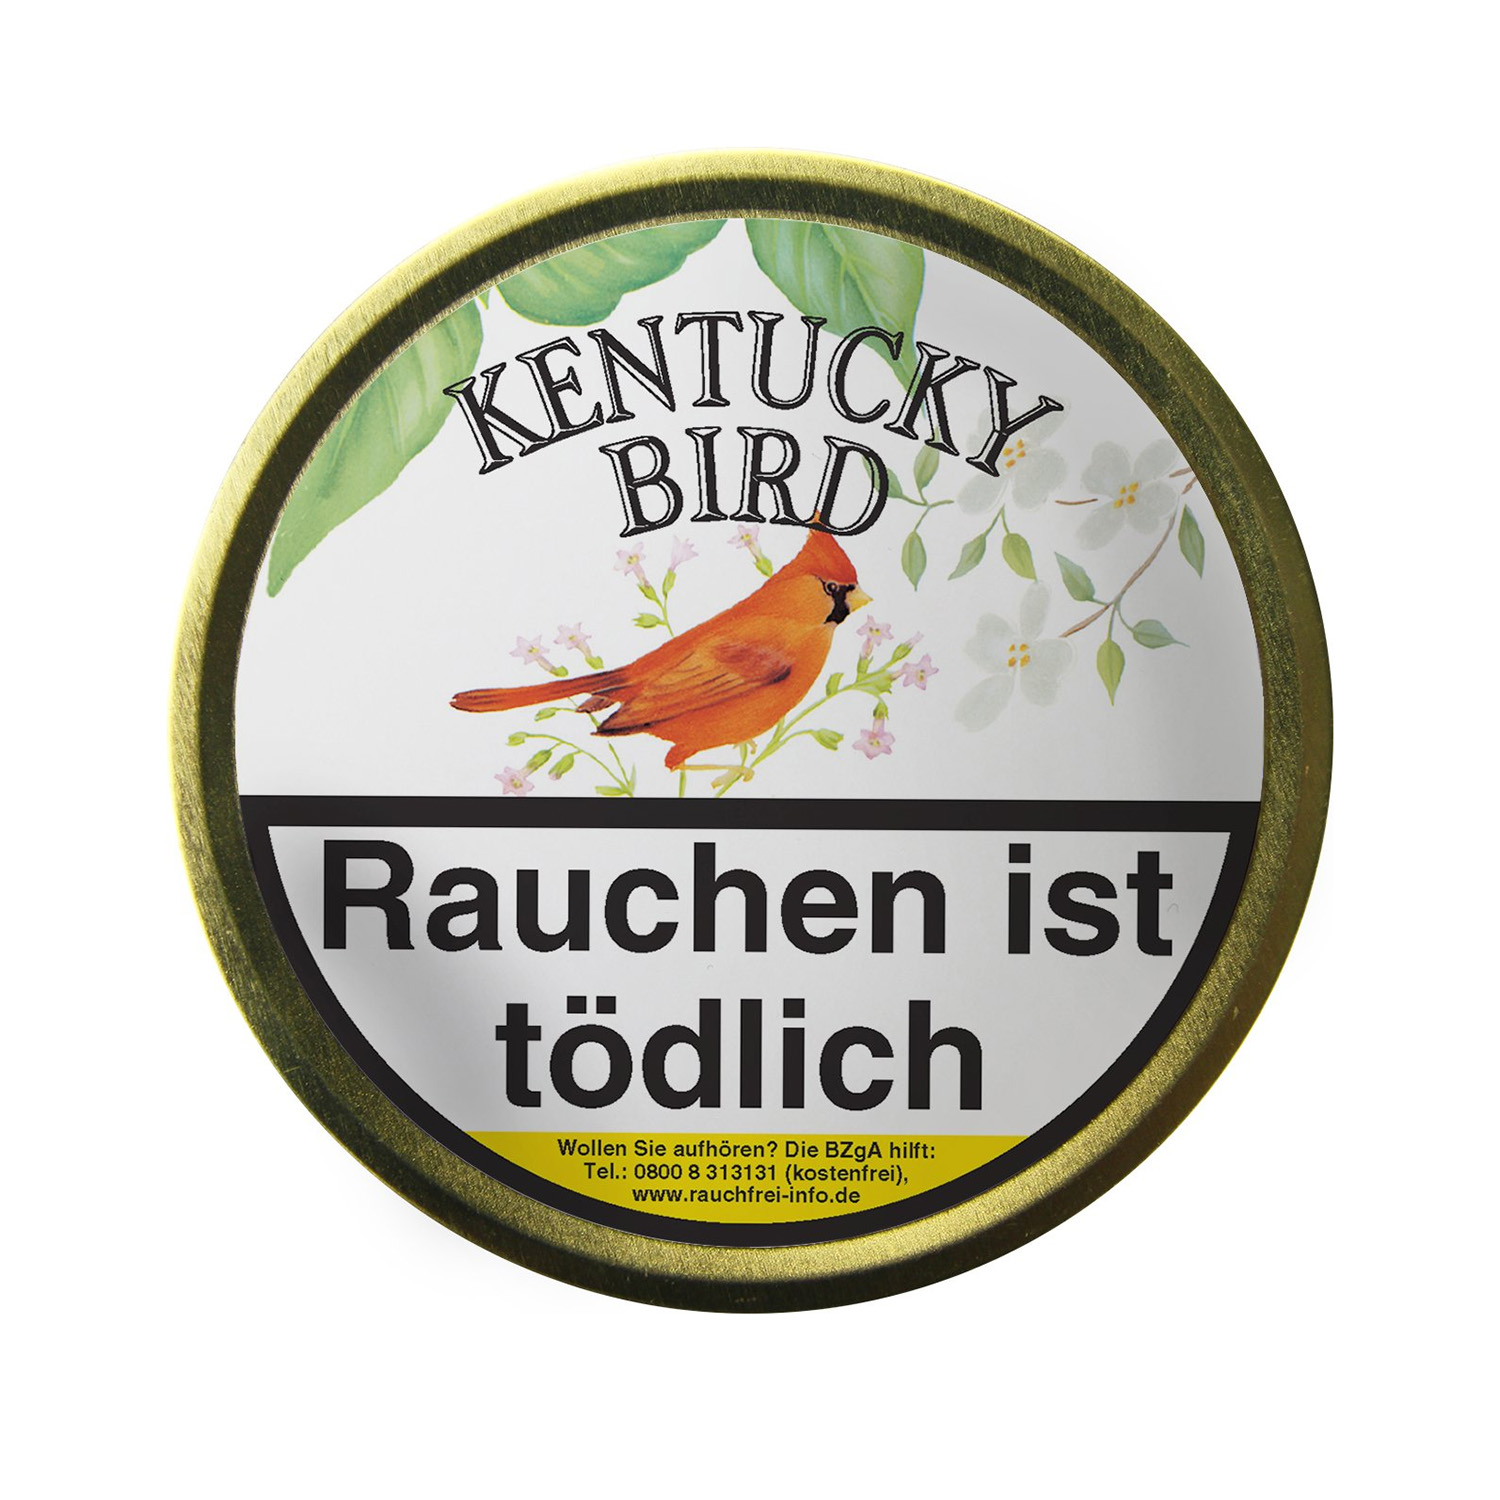 Kentucky Bird 100g